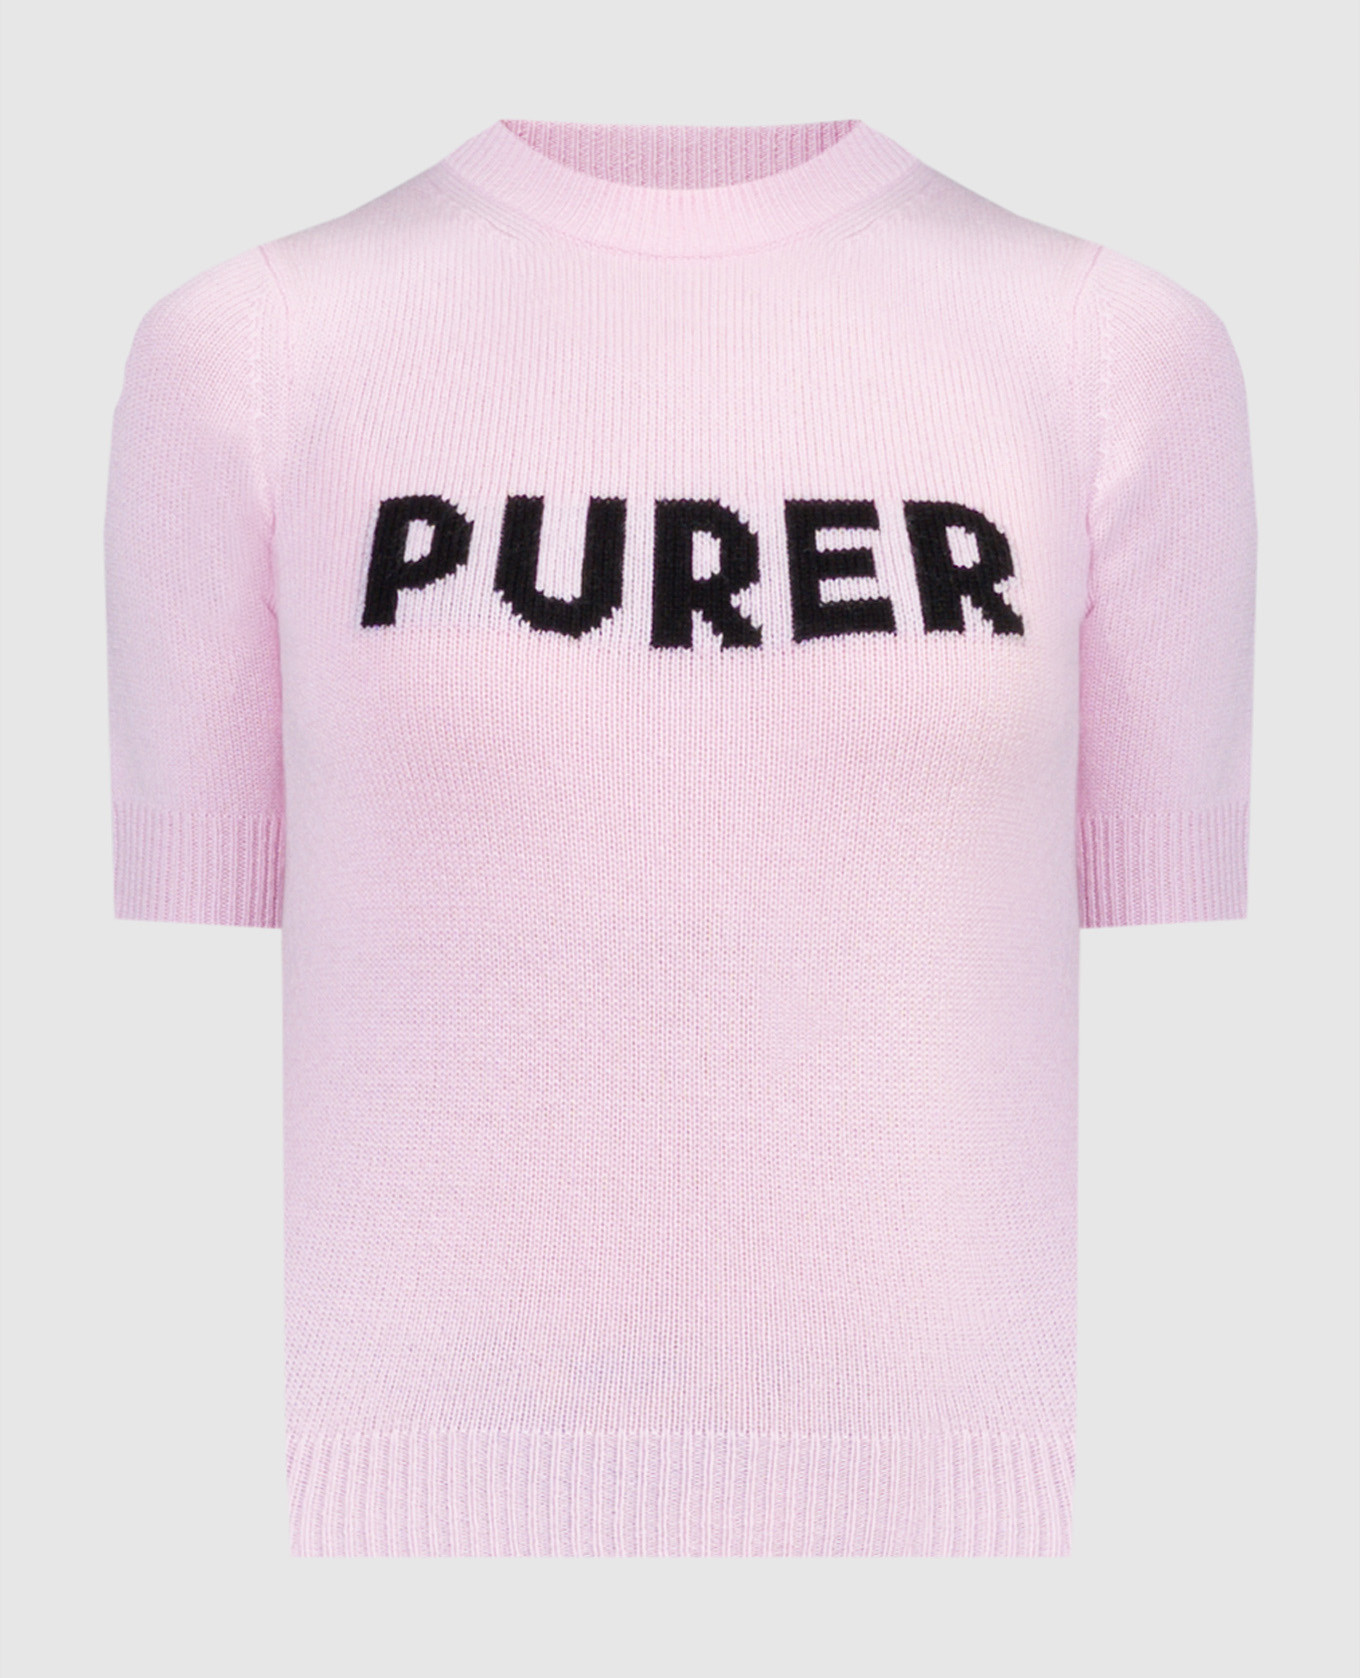 Розовая футболка Unisono из шерсти и кашемира с узором.